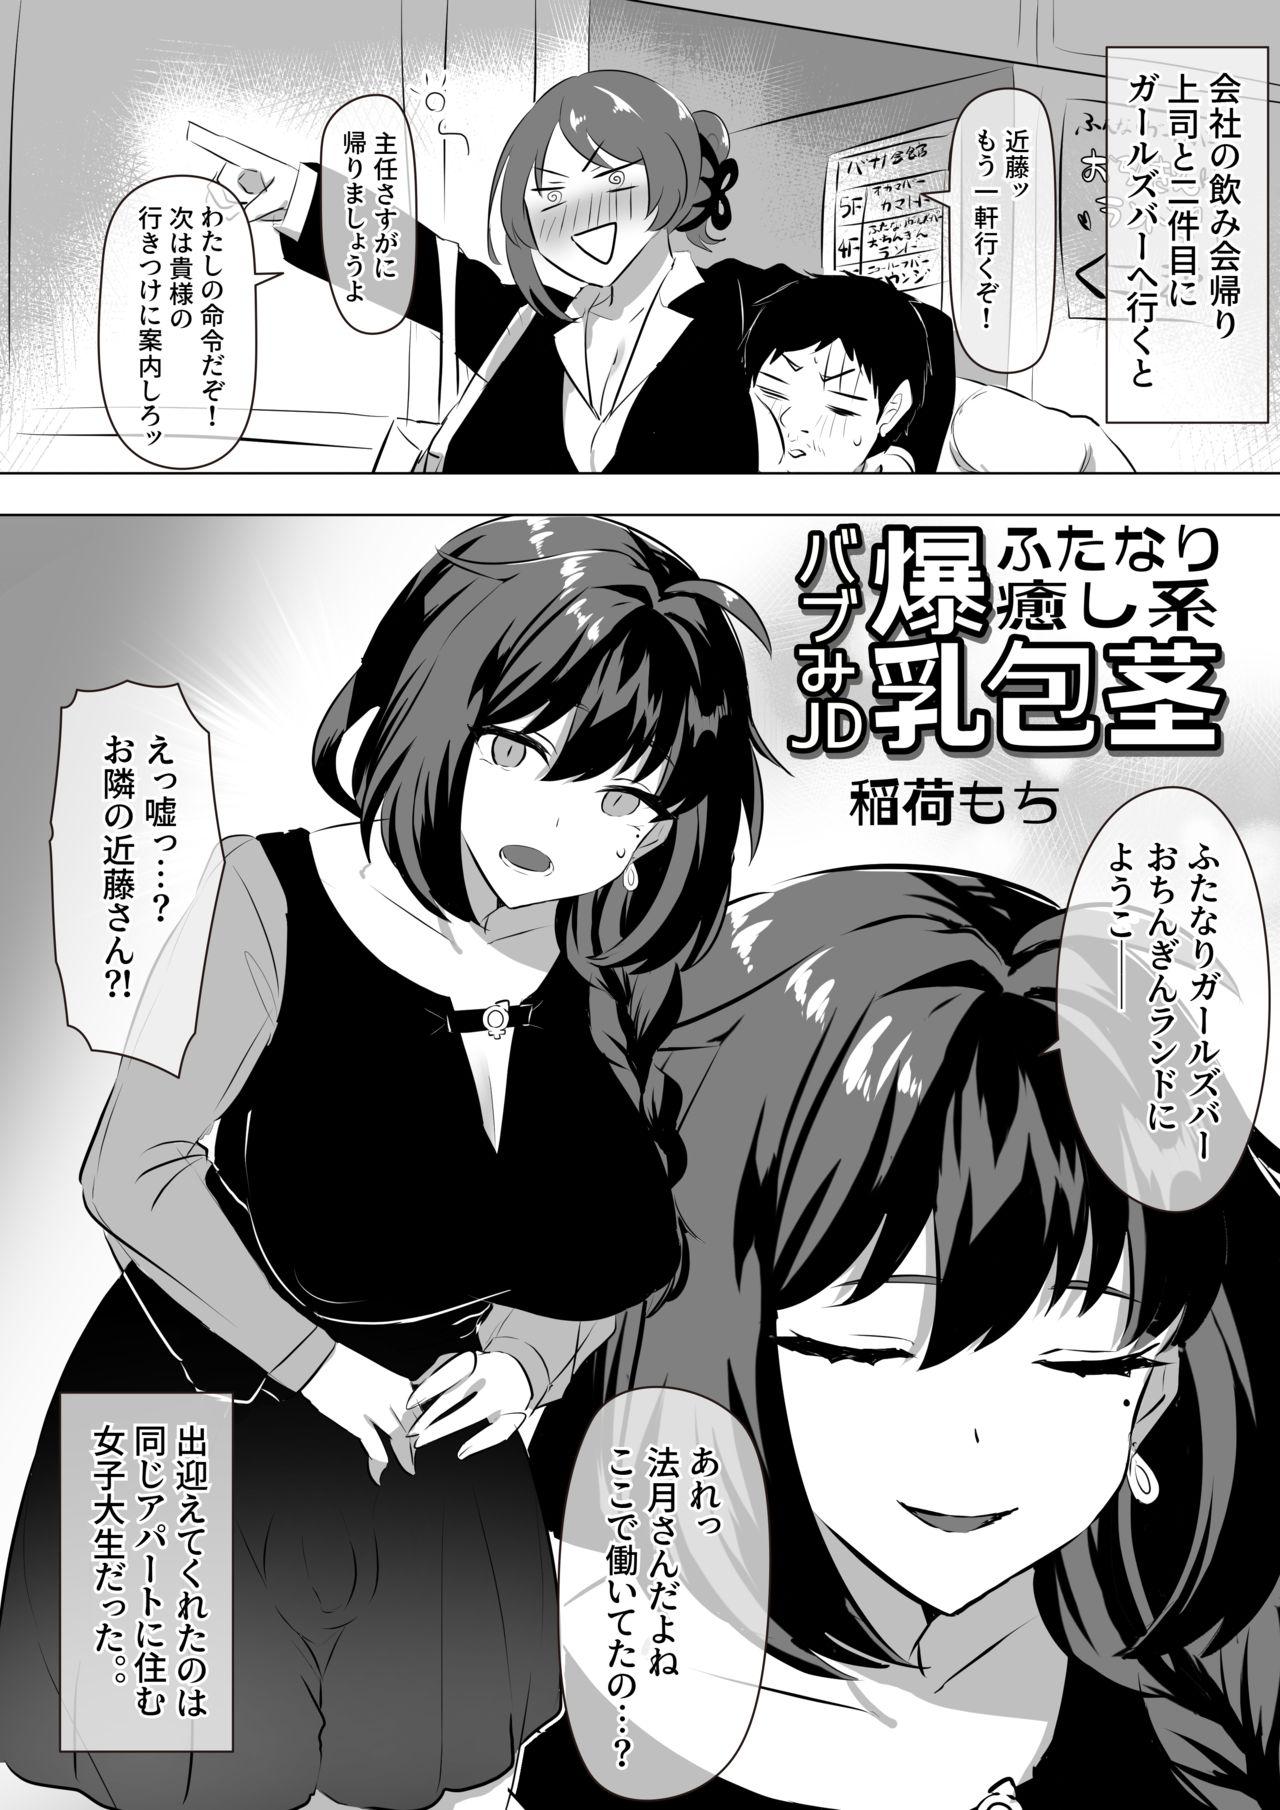 Futanari Iyashikei Bakunyū Hōkei Babu mi JD Manga 2